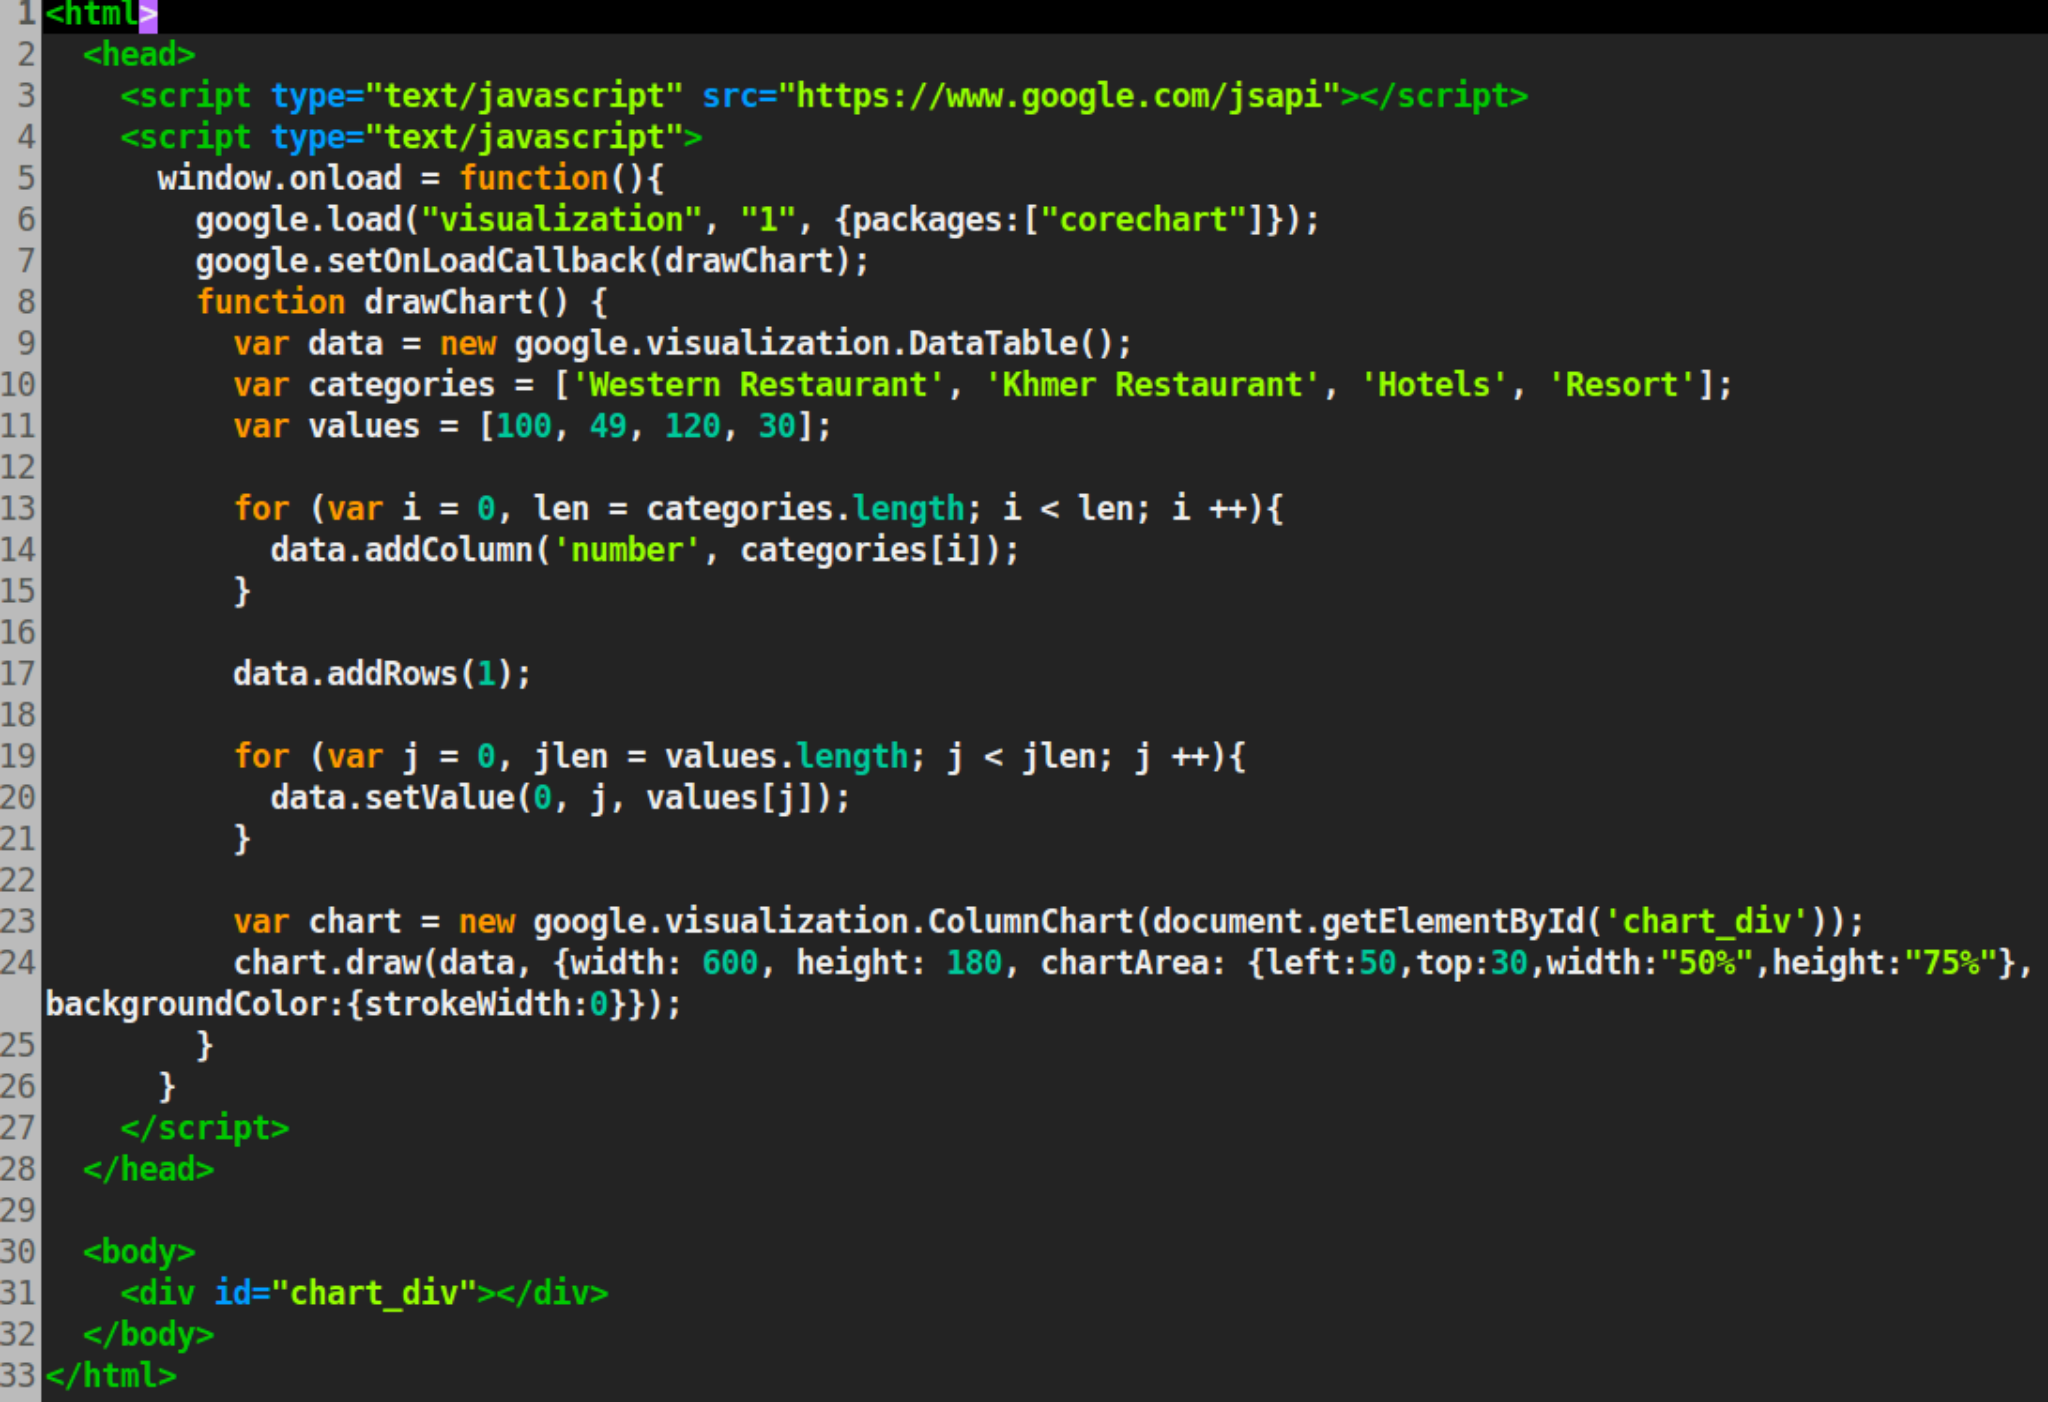 Index html var. Джава скрипт язык программирования. Как выглядит код на JAVASCRIPT. Программа джава скрипт язык программирования. Язык программирования Ява скрипт.